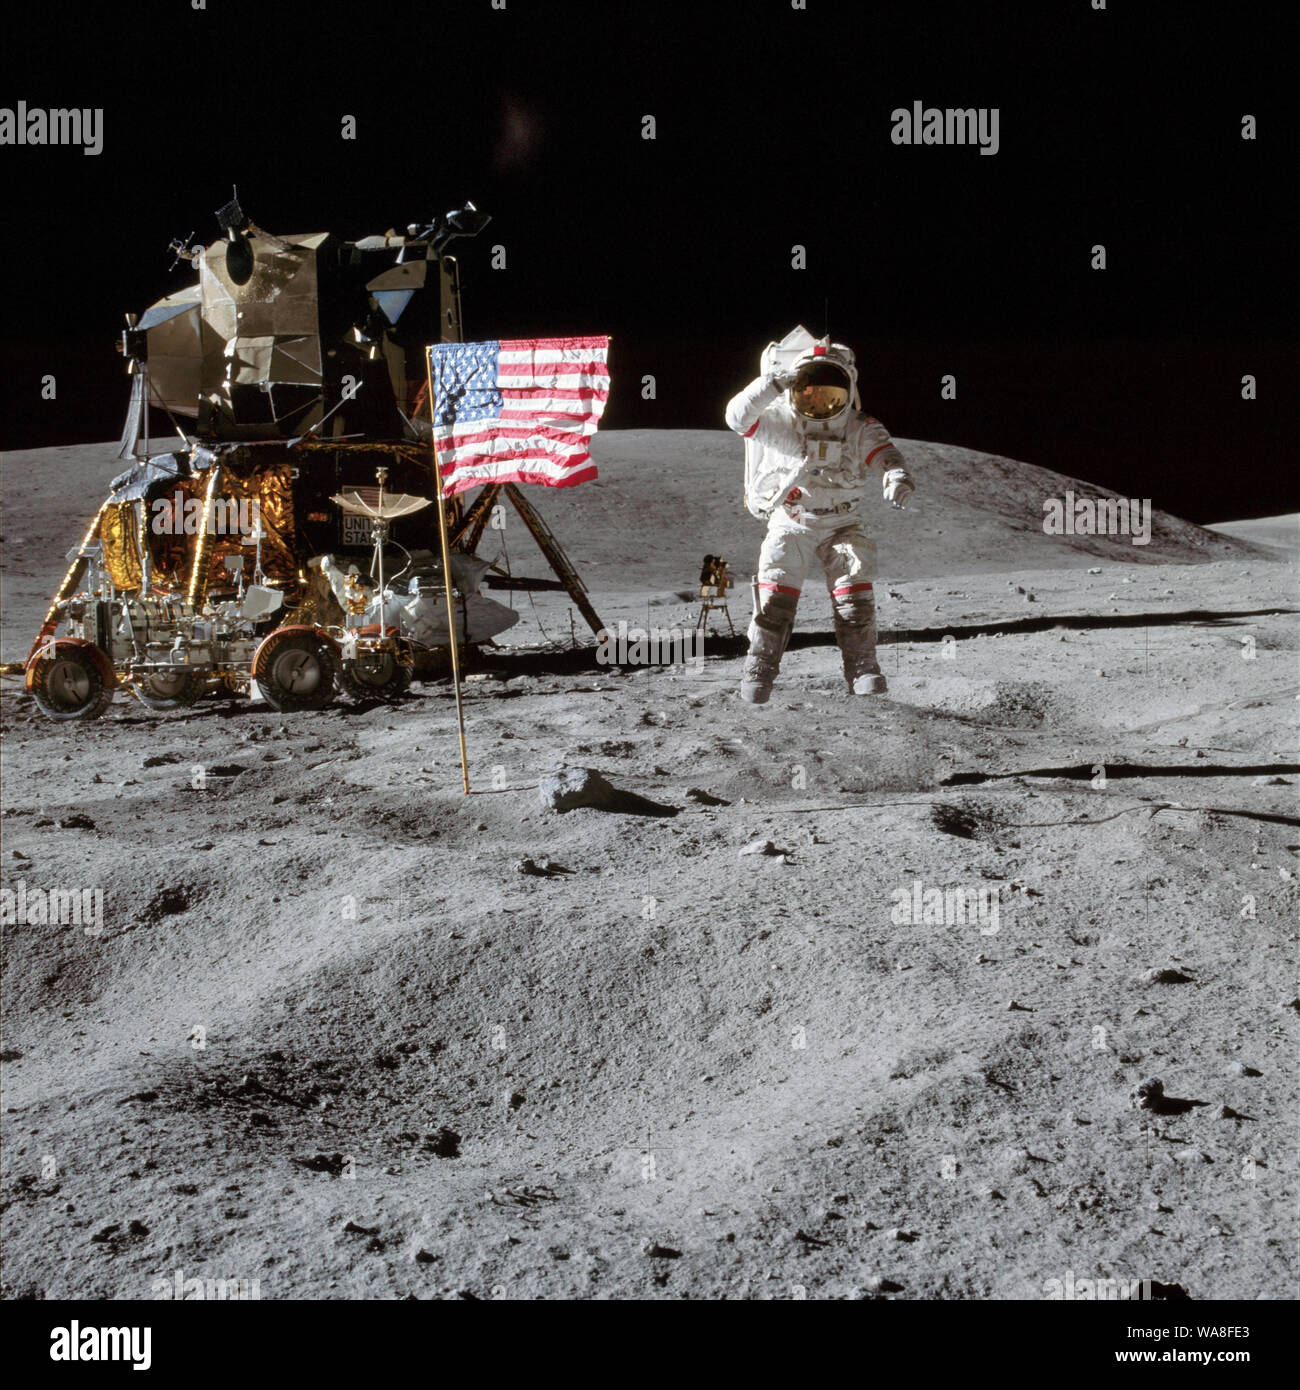 Junge springt, während Salutierte die amerikanische Flagge während der Apollo 16 - John W. Junge auf dem Mond während der Apollo 16 Mission. Charles M.Herzog Jr. nahm dieses Bild. Das LM Orion befindet sich auf der linken Seite. 21. April 1972 Stockfoto